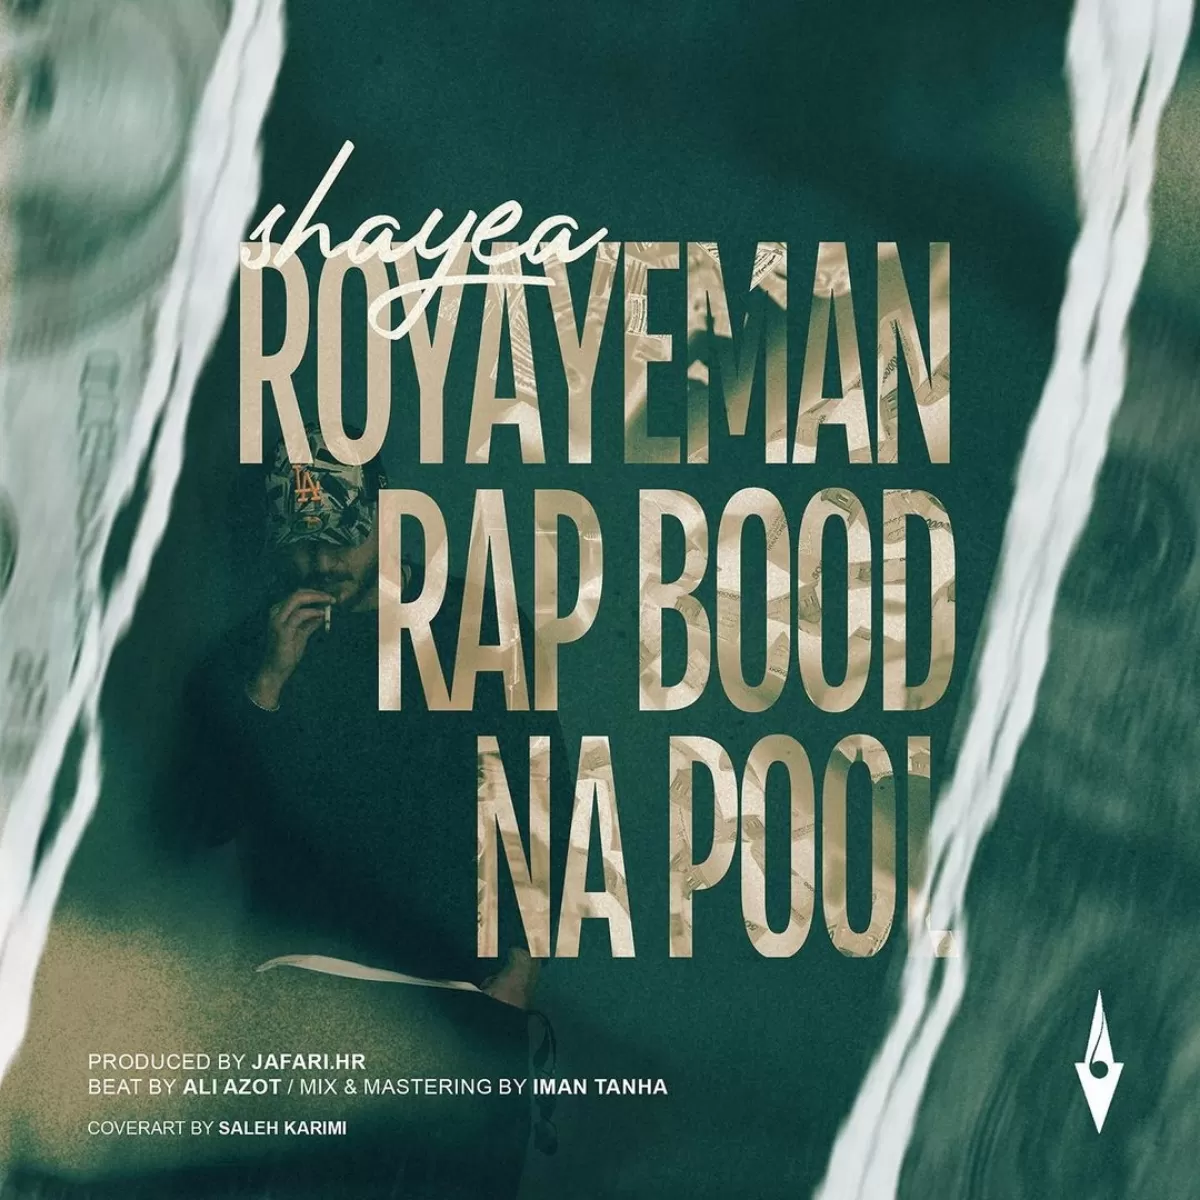 دانلود آهنگ جدید Royaye Man Rap Bood Na Pool به نام Shayea